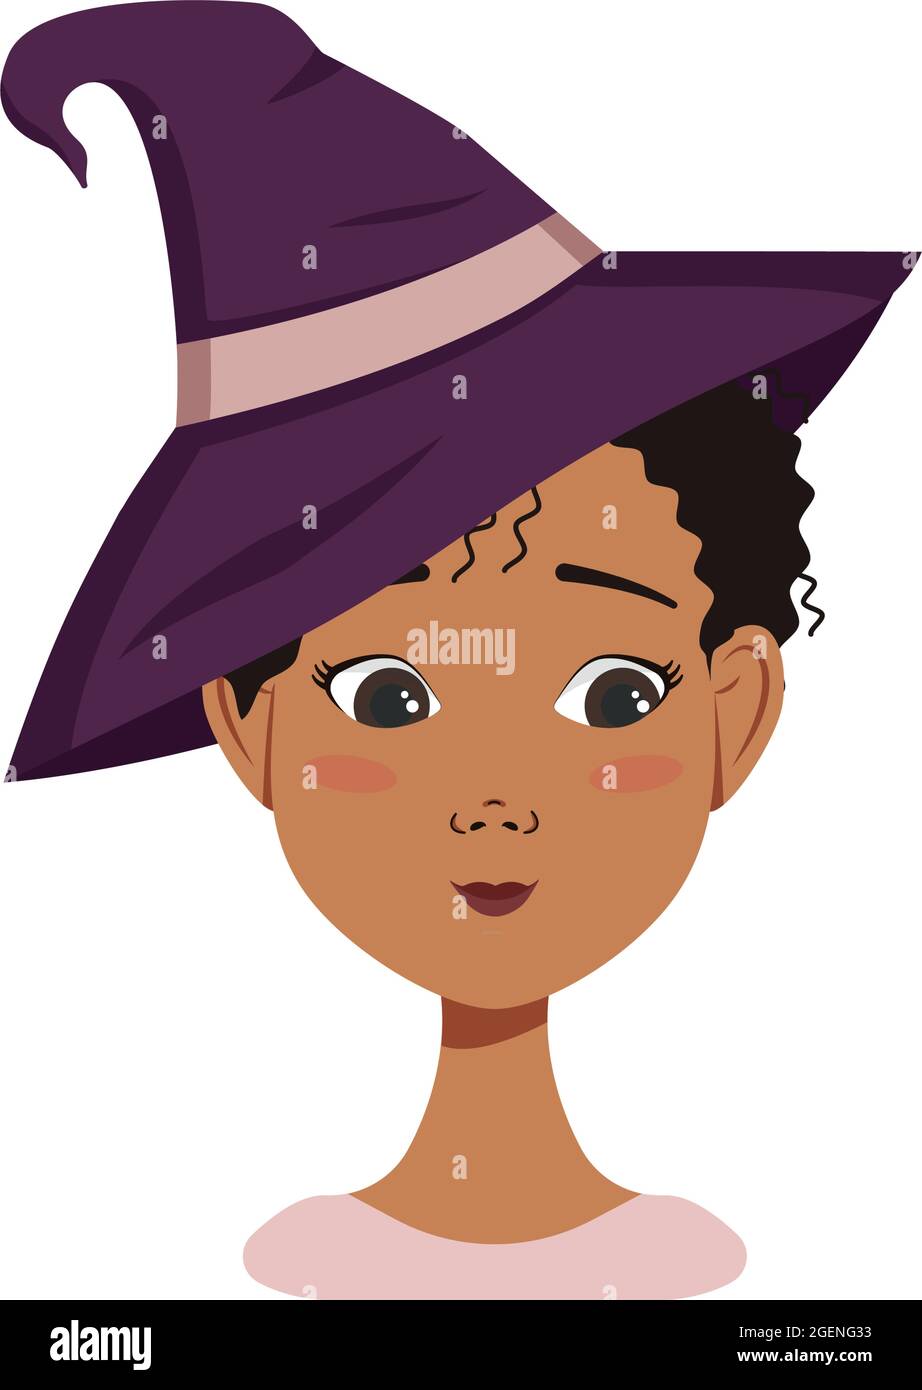 Avatar féminin afro-américain aux cheveux bouclés noirs, aux émotions de timidité, au visage embarrassé et aux yeux bas, portant un chapeau de sorcière. Personnage d'Halloween en costume Illustration de Vecteur